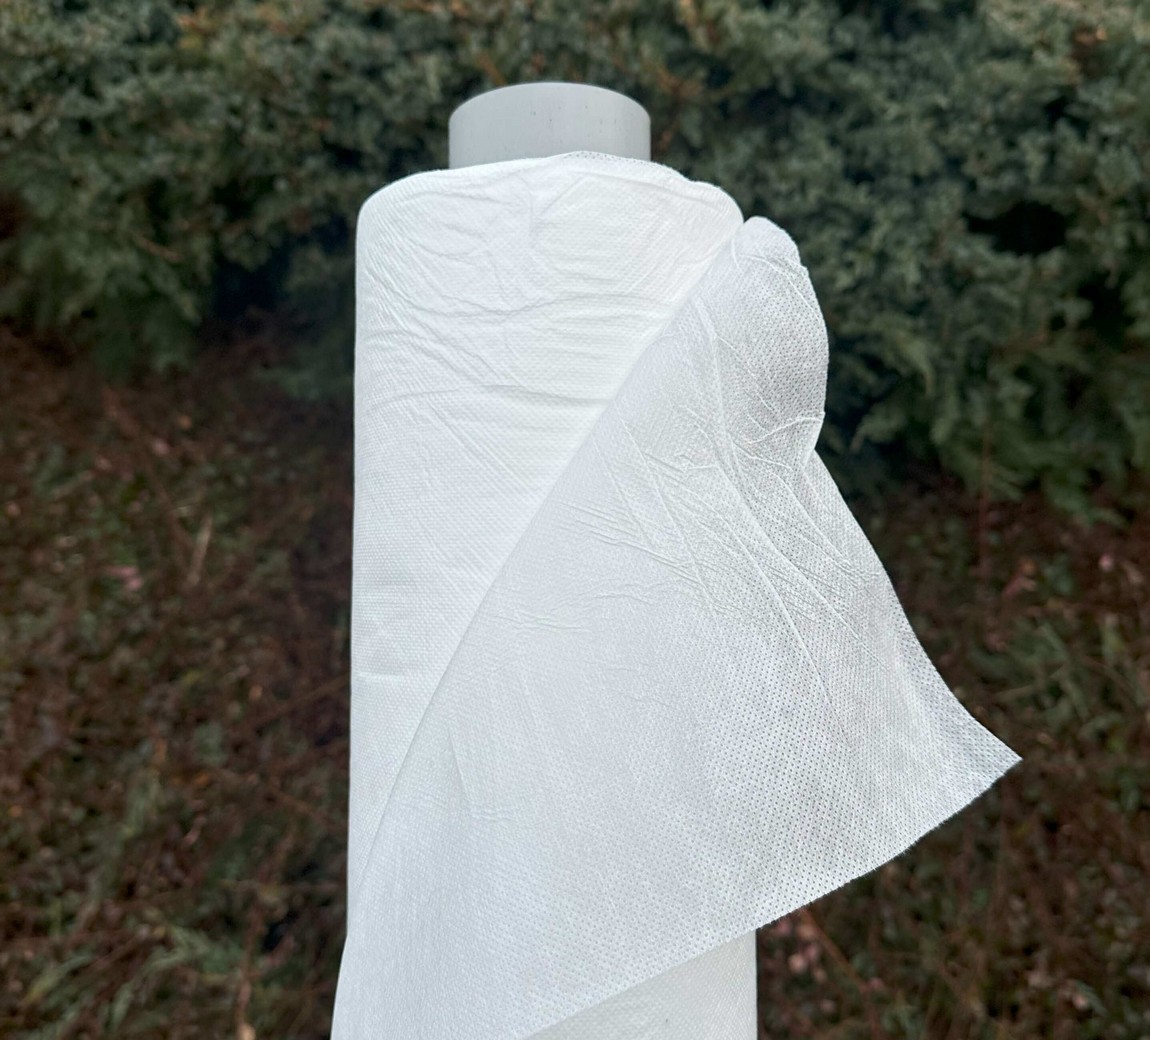 Jutabond Netkaná textílie proti mrazu, 50g/m2, 100m x 1,6m  - bílá EXTRA SILNÁ ZAHRADA Sklad6 0375 103